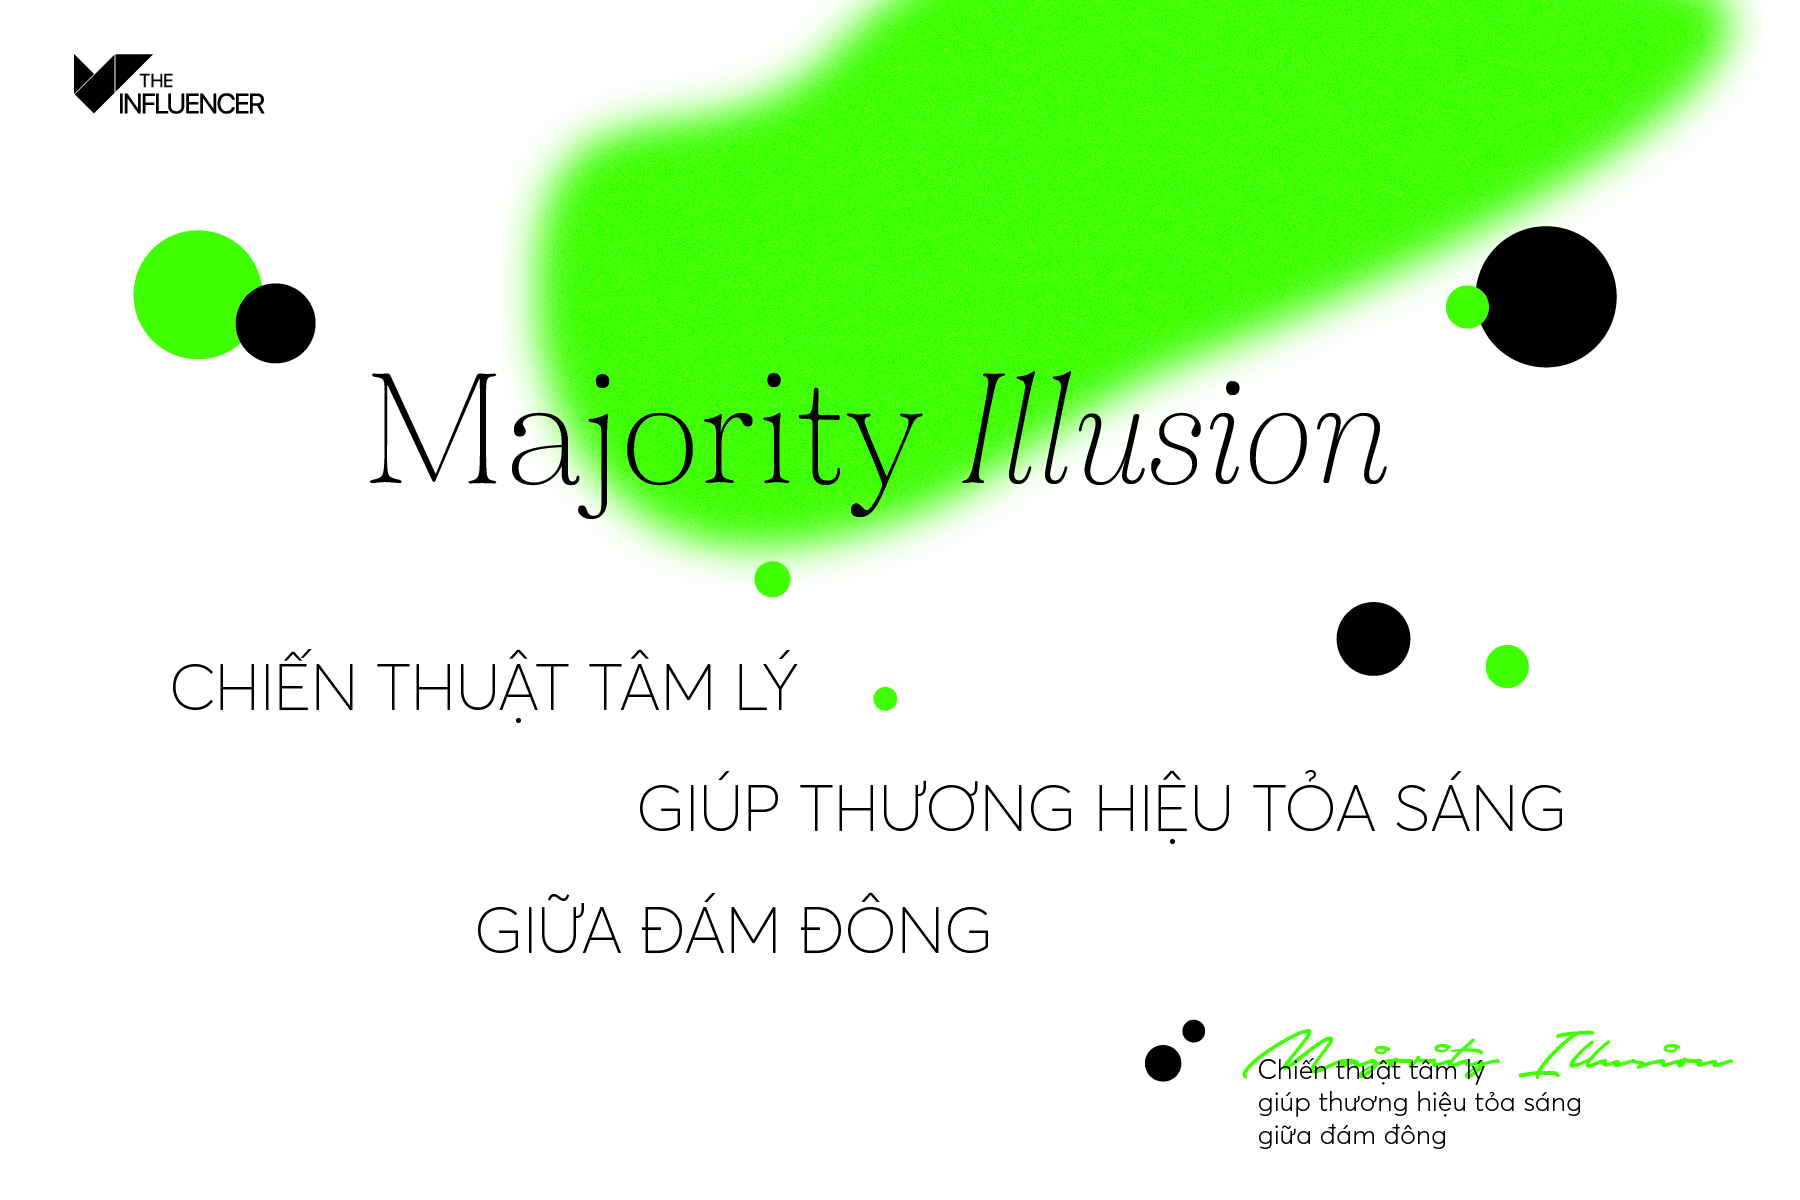 Majority Illusion - Chiến thuật tâm lý giúp thương hiệu tỏa sáng giữa đám đông